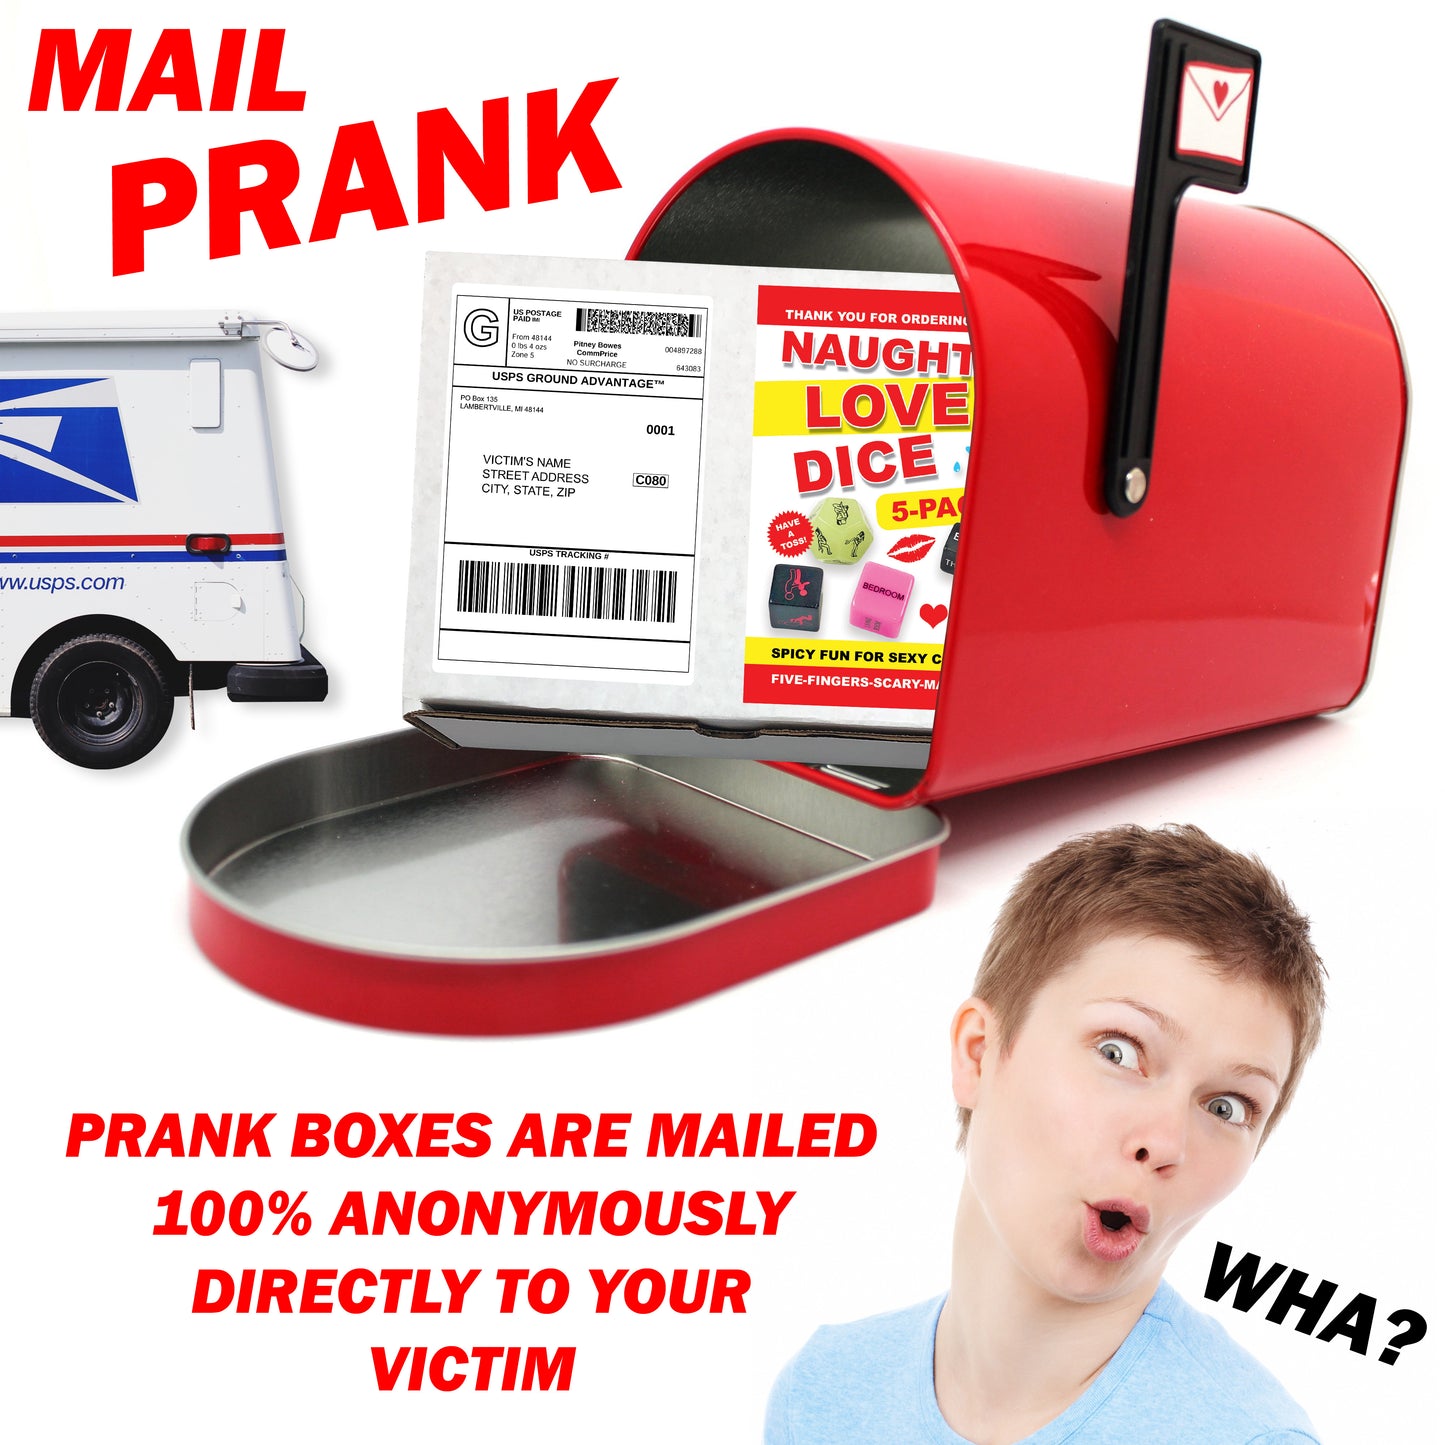 Naughty Love Dice Prank Mail